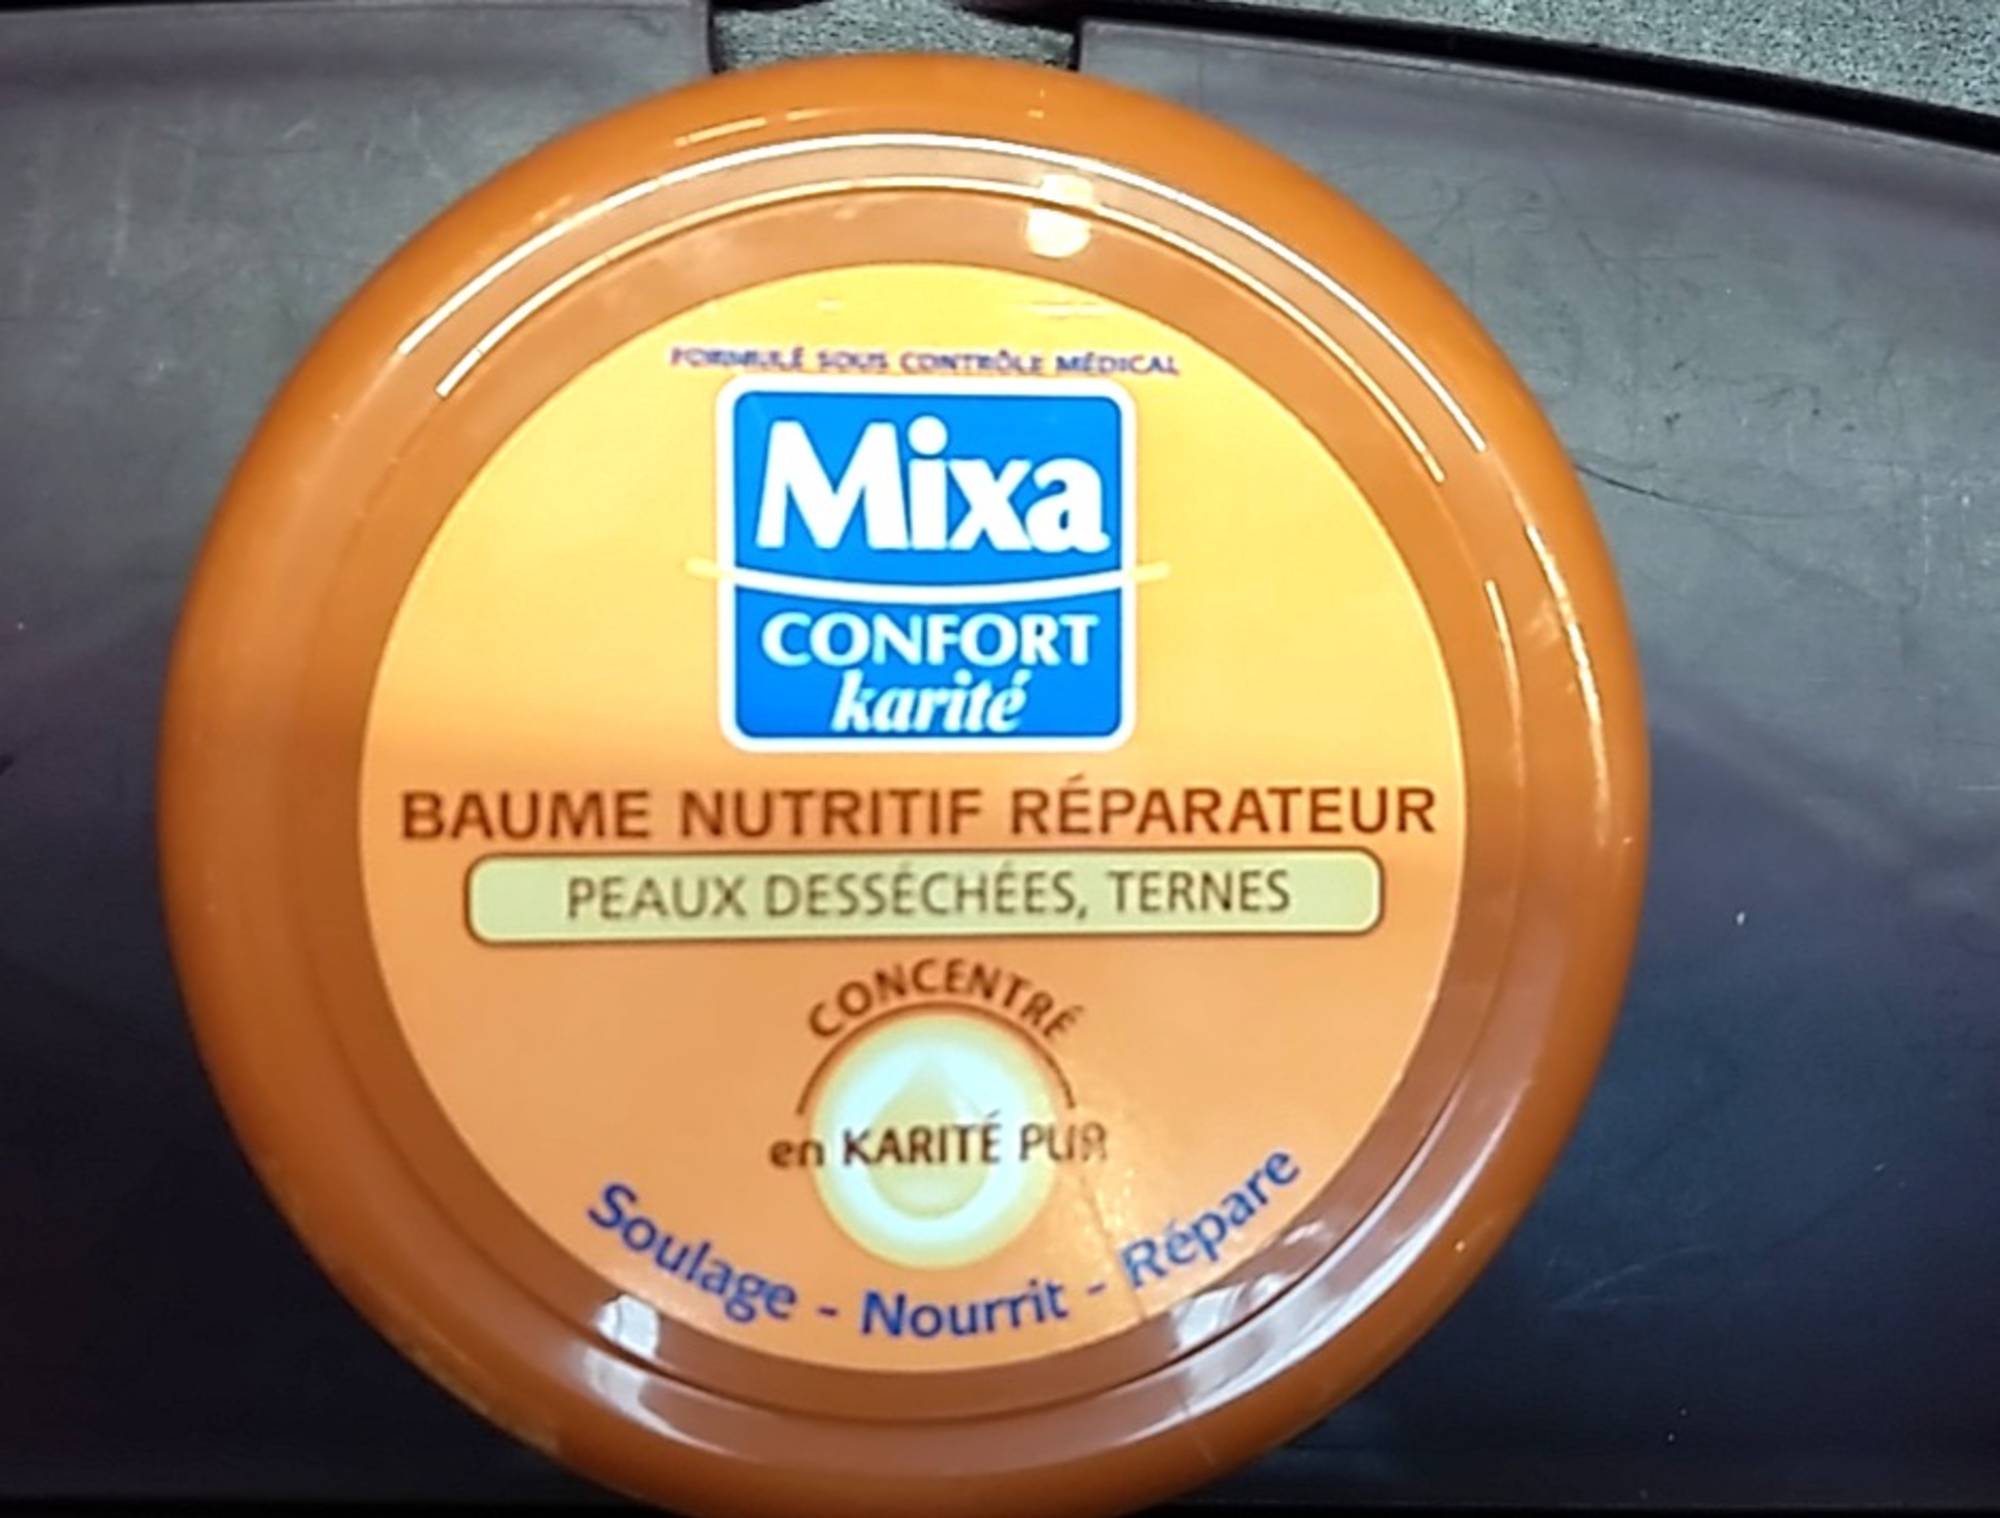 MIXA - Confort karité - Baume nutritif réparateur